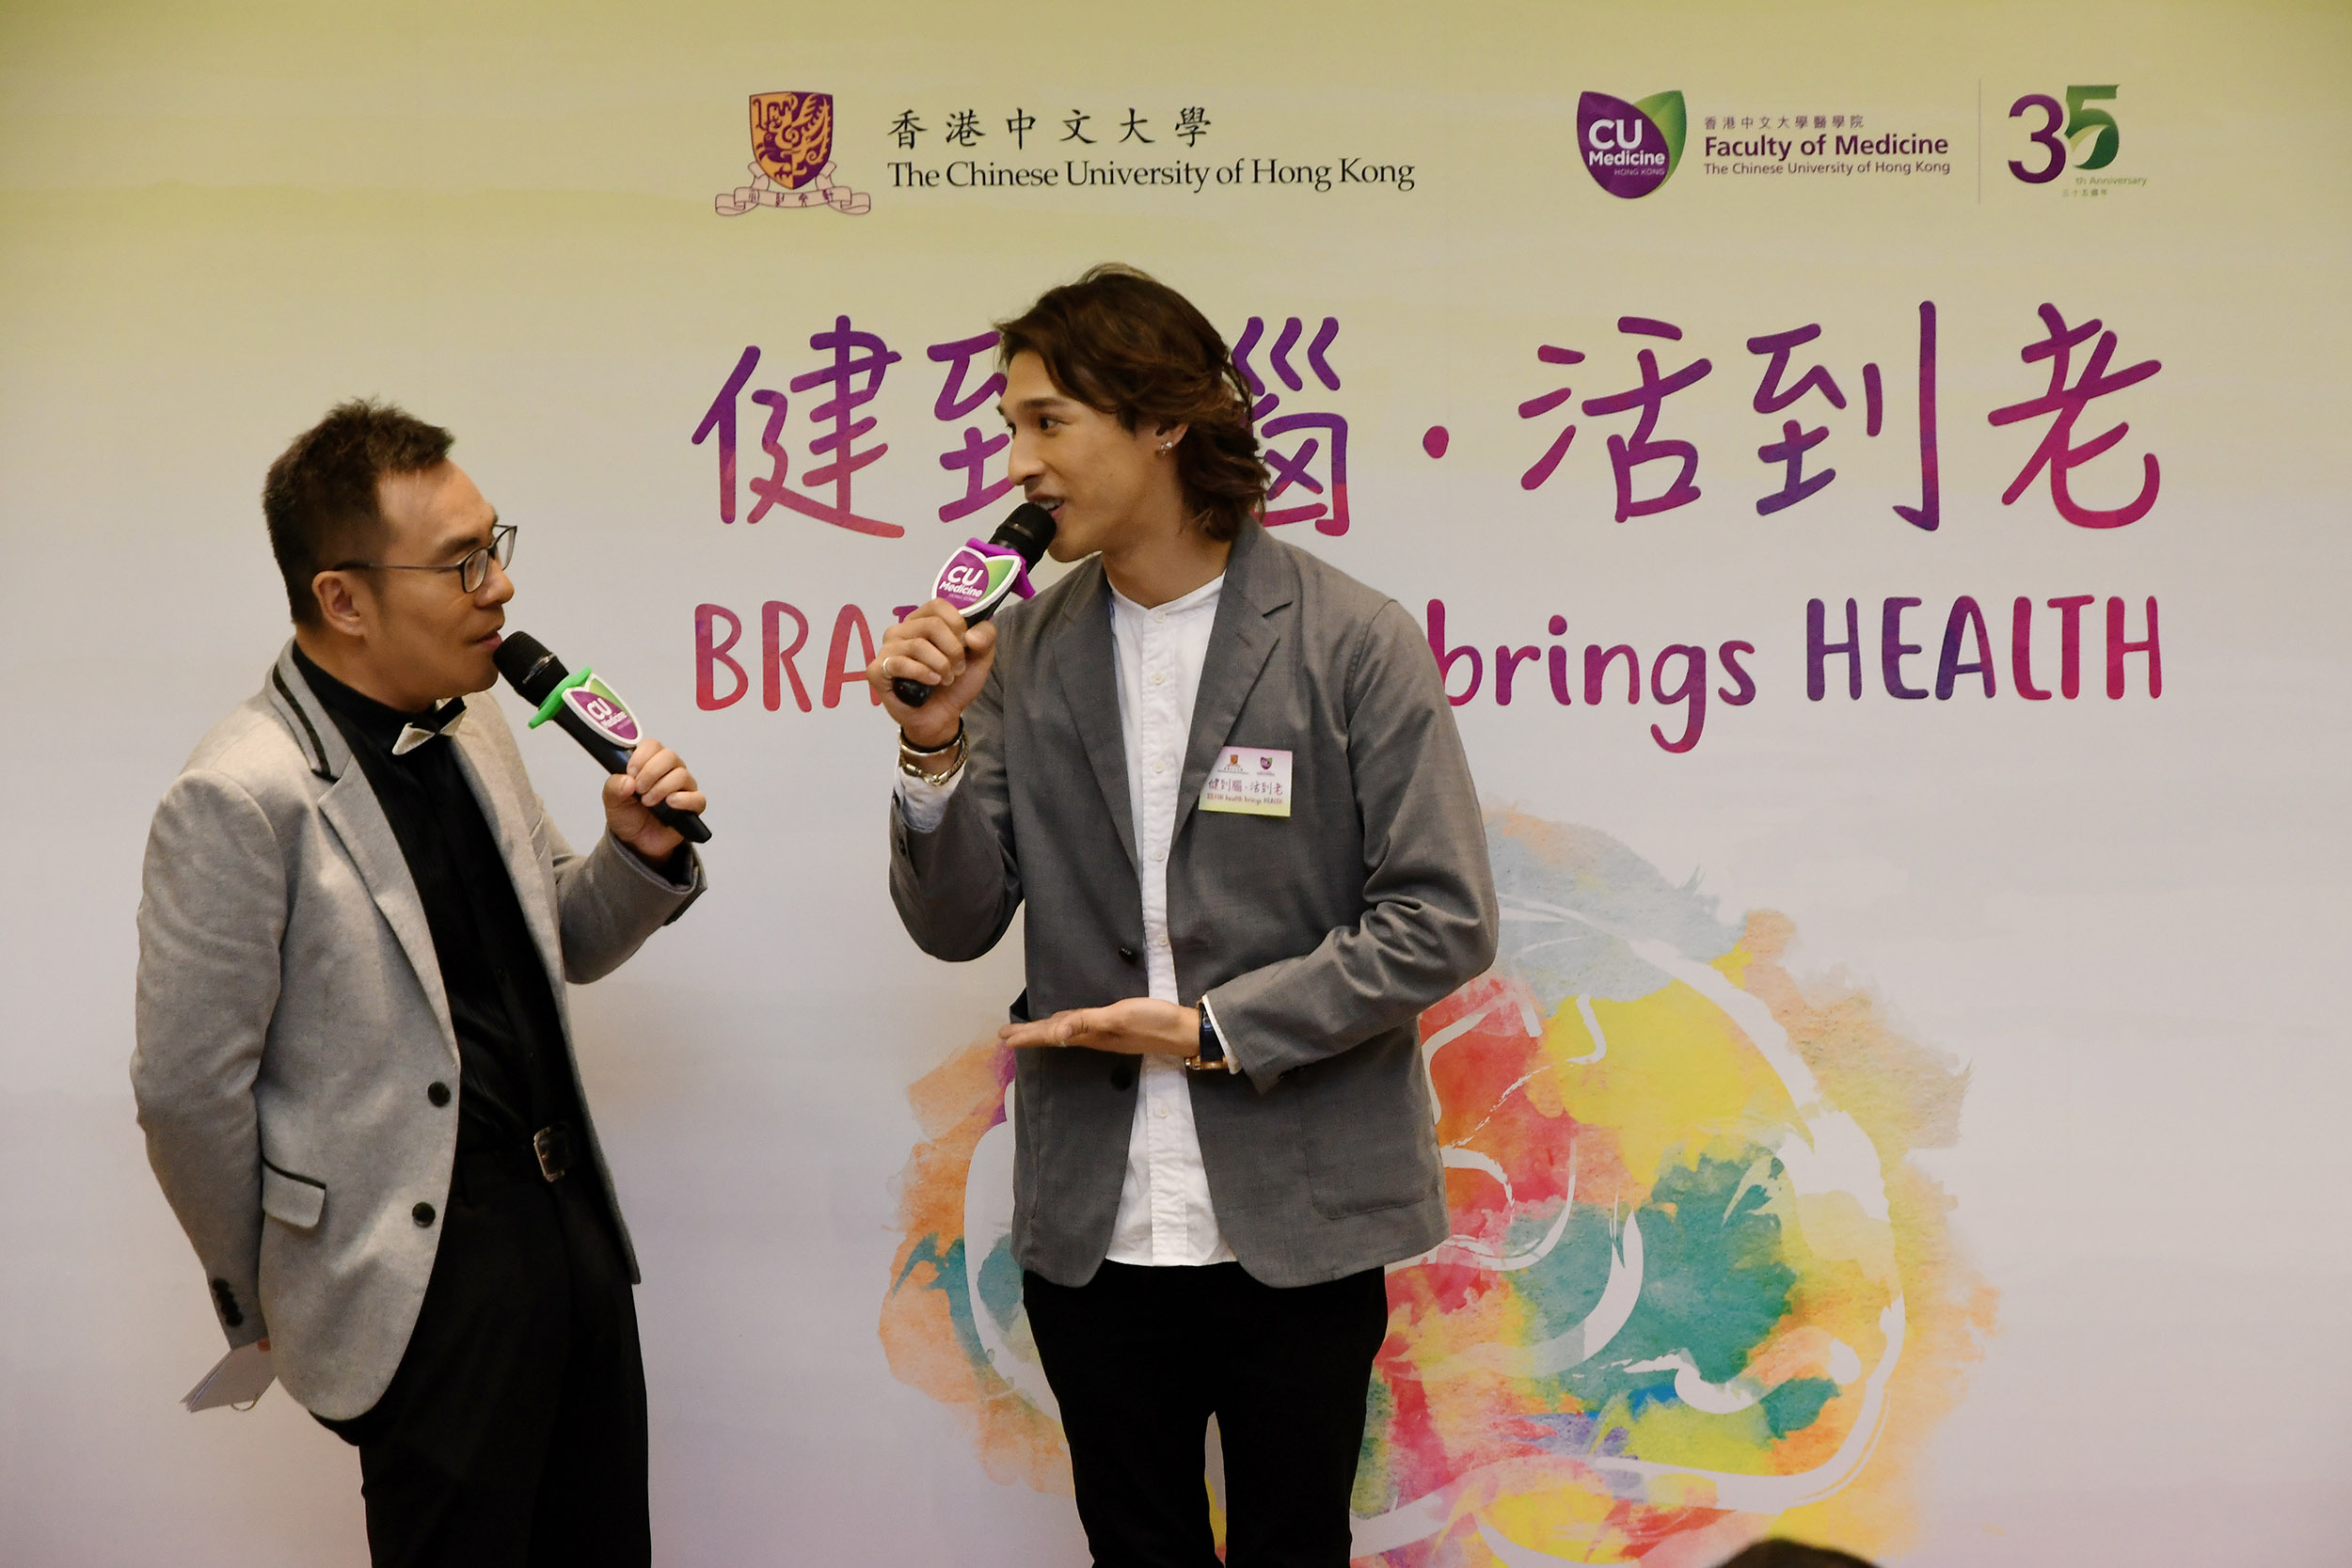 香港藝人黃又南先生爸爸是認知障礙症患者，亦為研究計劃首位參加者。